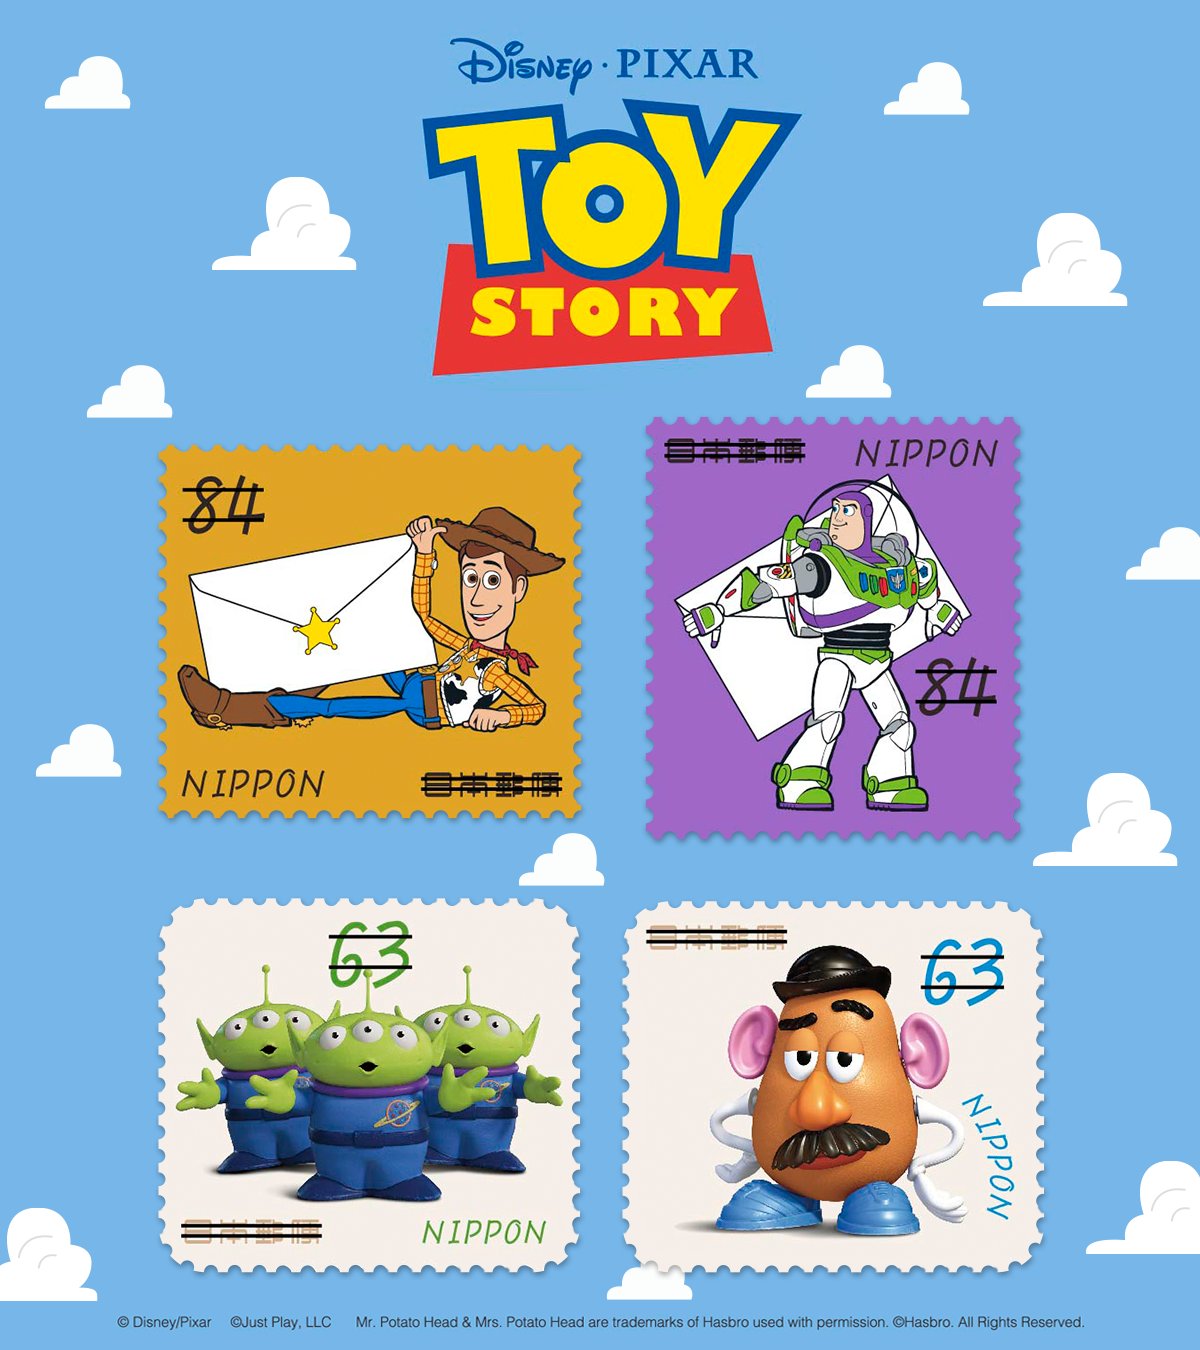 ぽすくま 日本郵便 グリーティング切手 トイ ストーリー が7 13 水 に発売 トイストーリー のキャラクターが勢ぞろい 84円切手はイラスト 63円切手は劇場版でなじみ深いcgで表現 見ているだけで楽しくなっちゃうね ぼくも